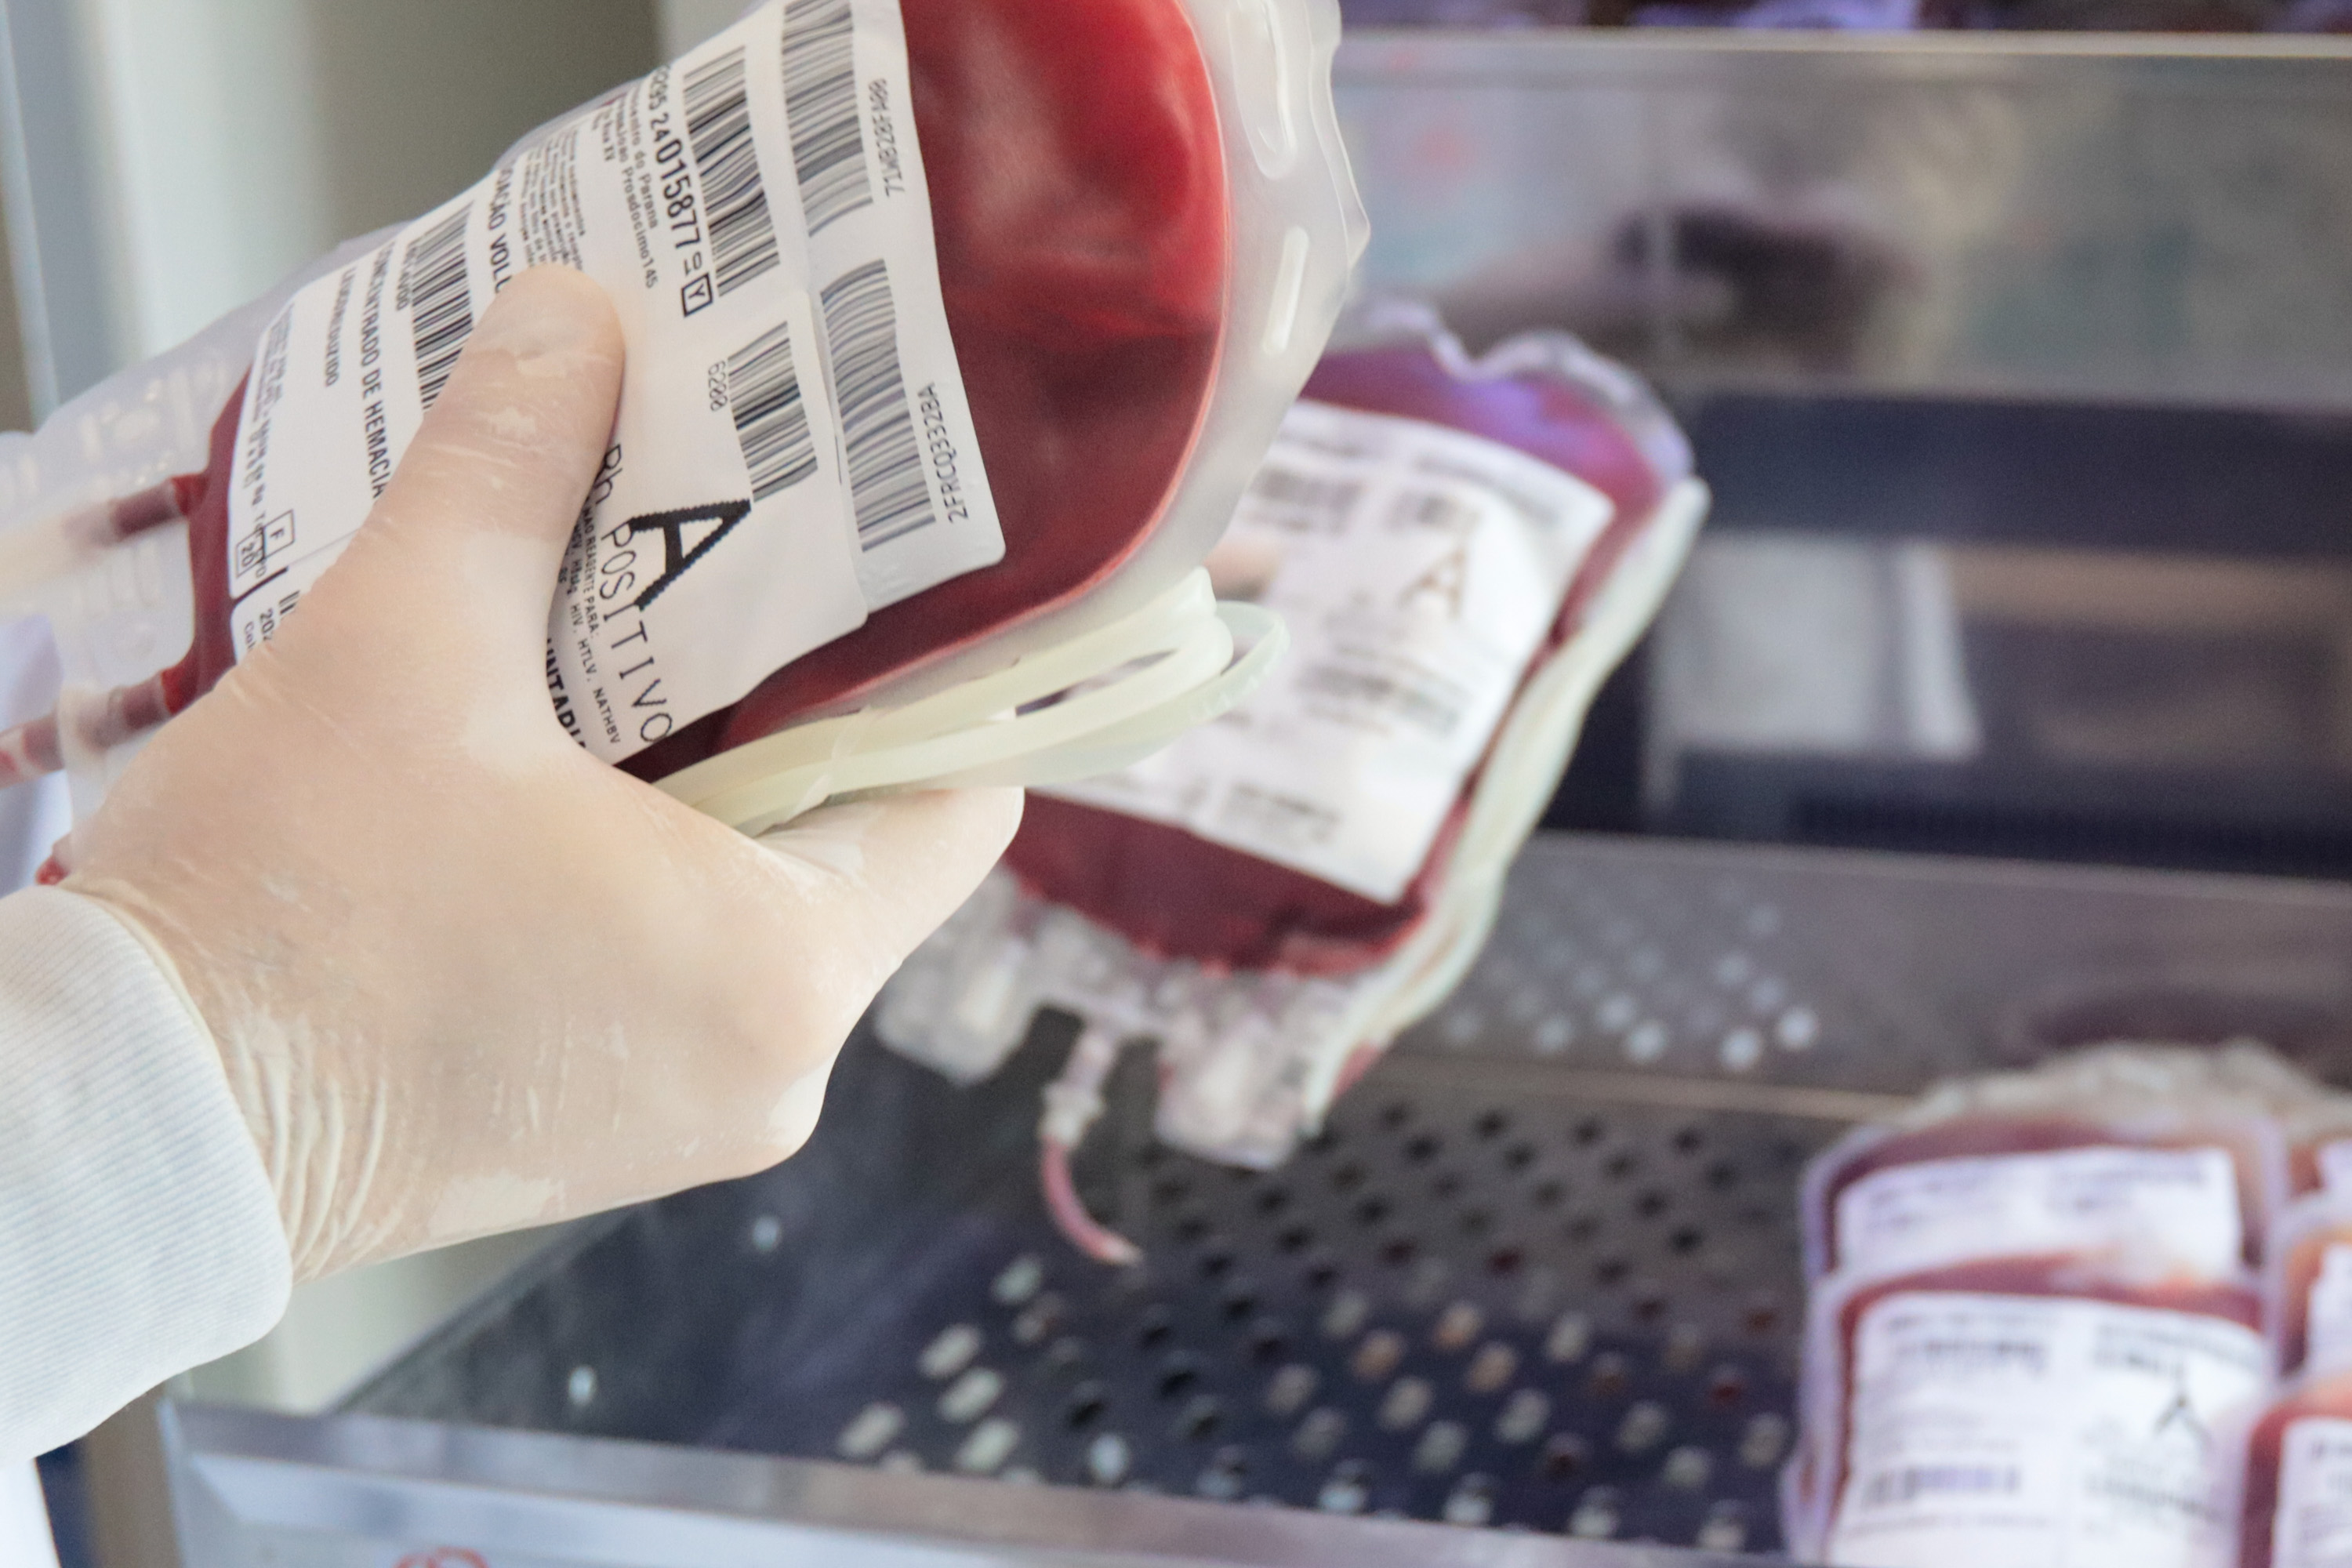 Imagem Paraná envia 300 bolsas de sangue para ajudar o sistema de saúde do Rio Grande do Sul